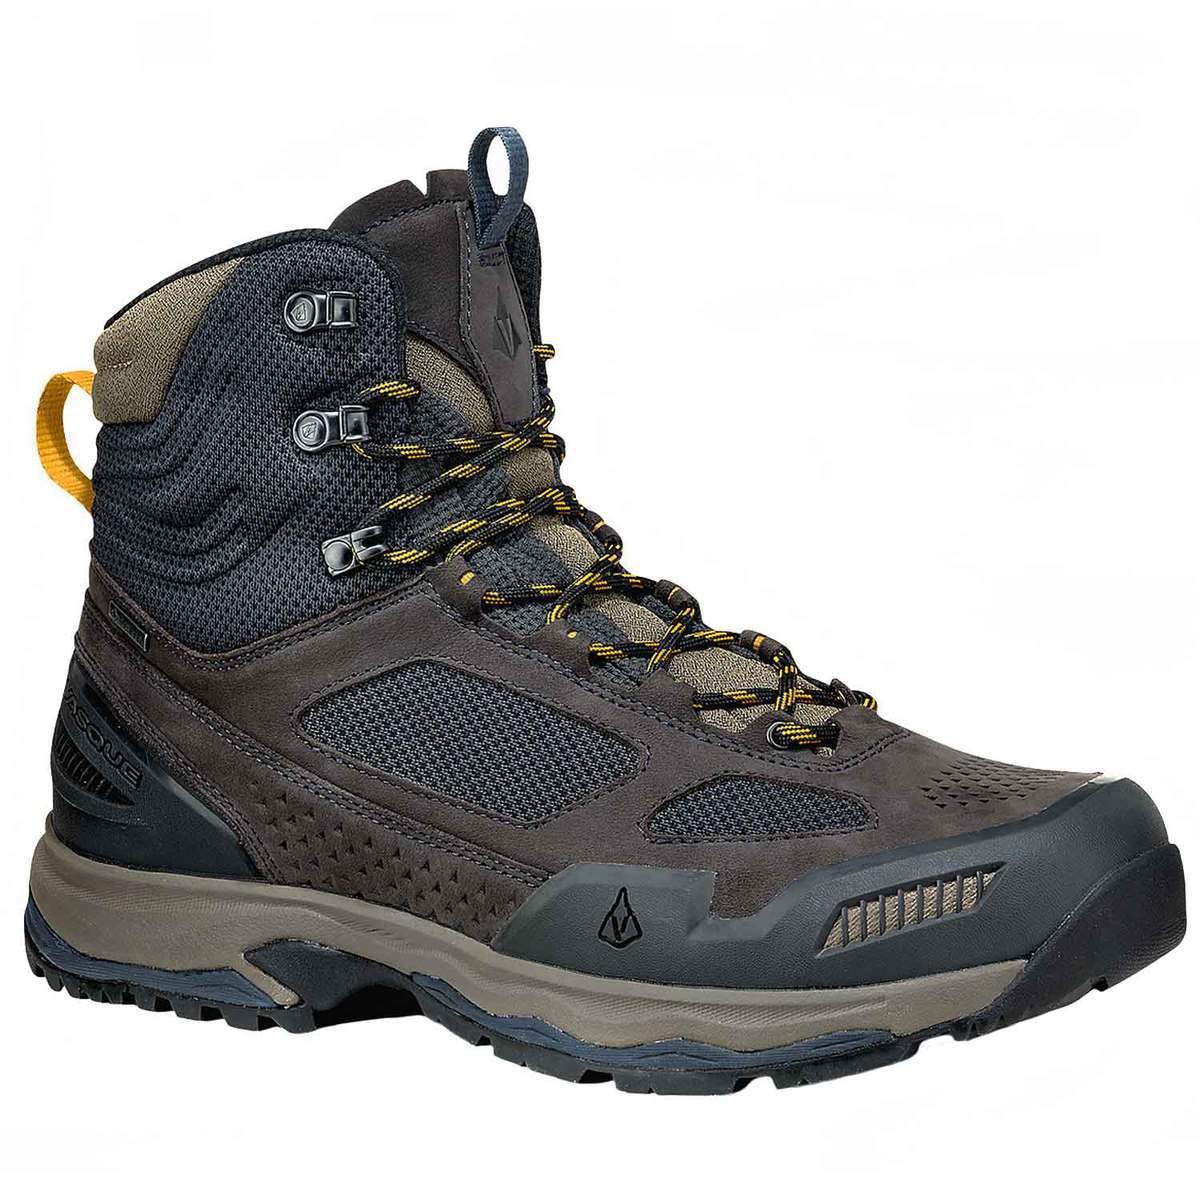 Vasque Men's Breeze All Terrain Waterproof Mid Hiking Boots | Sportsman ...